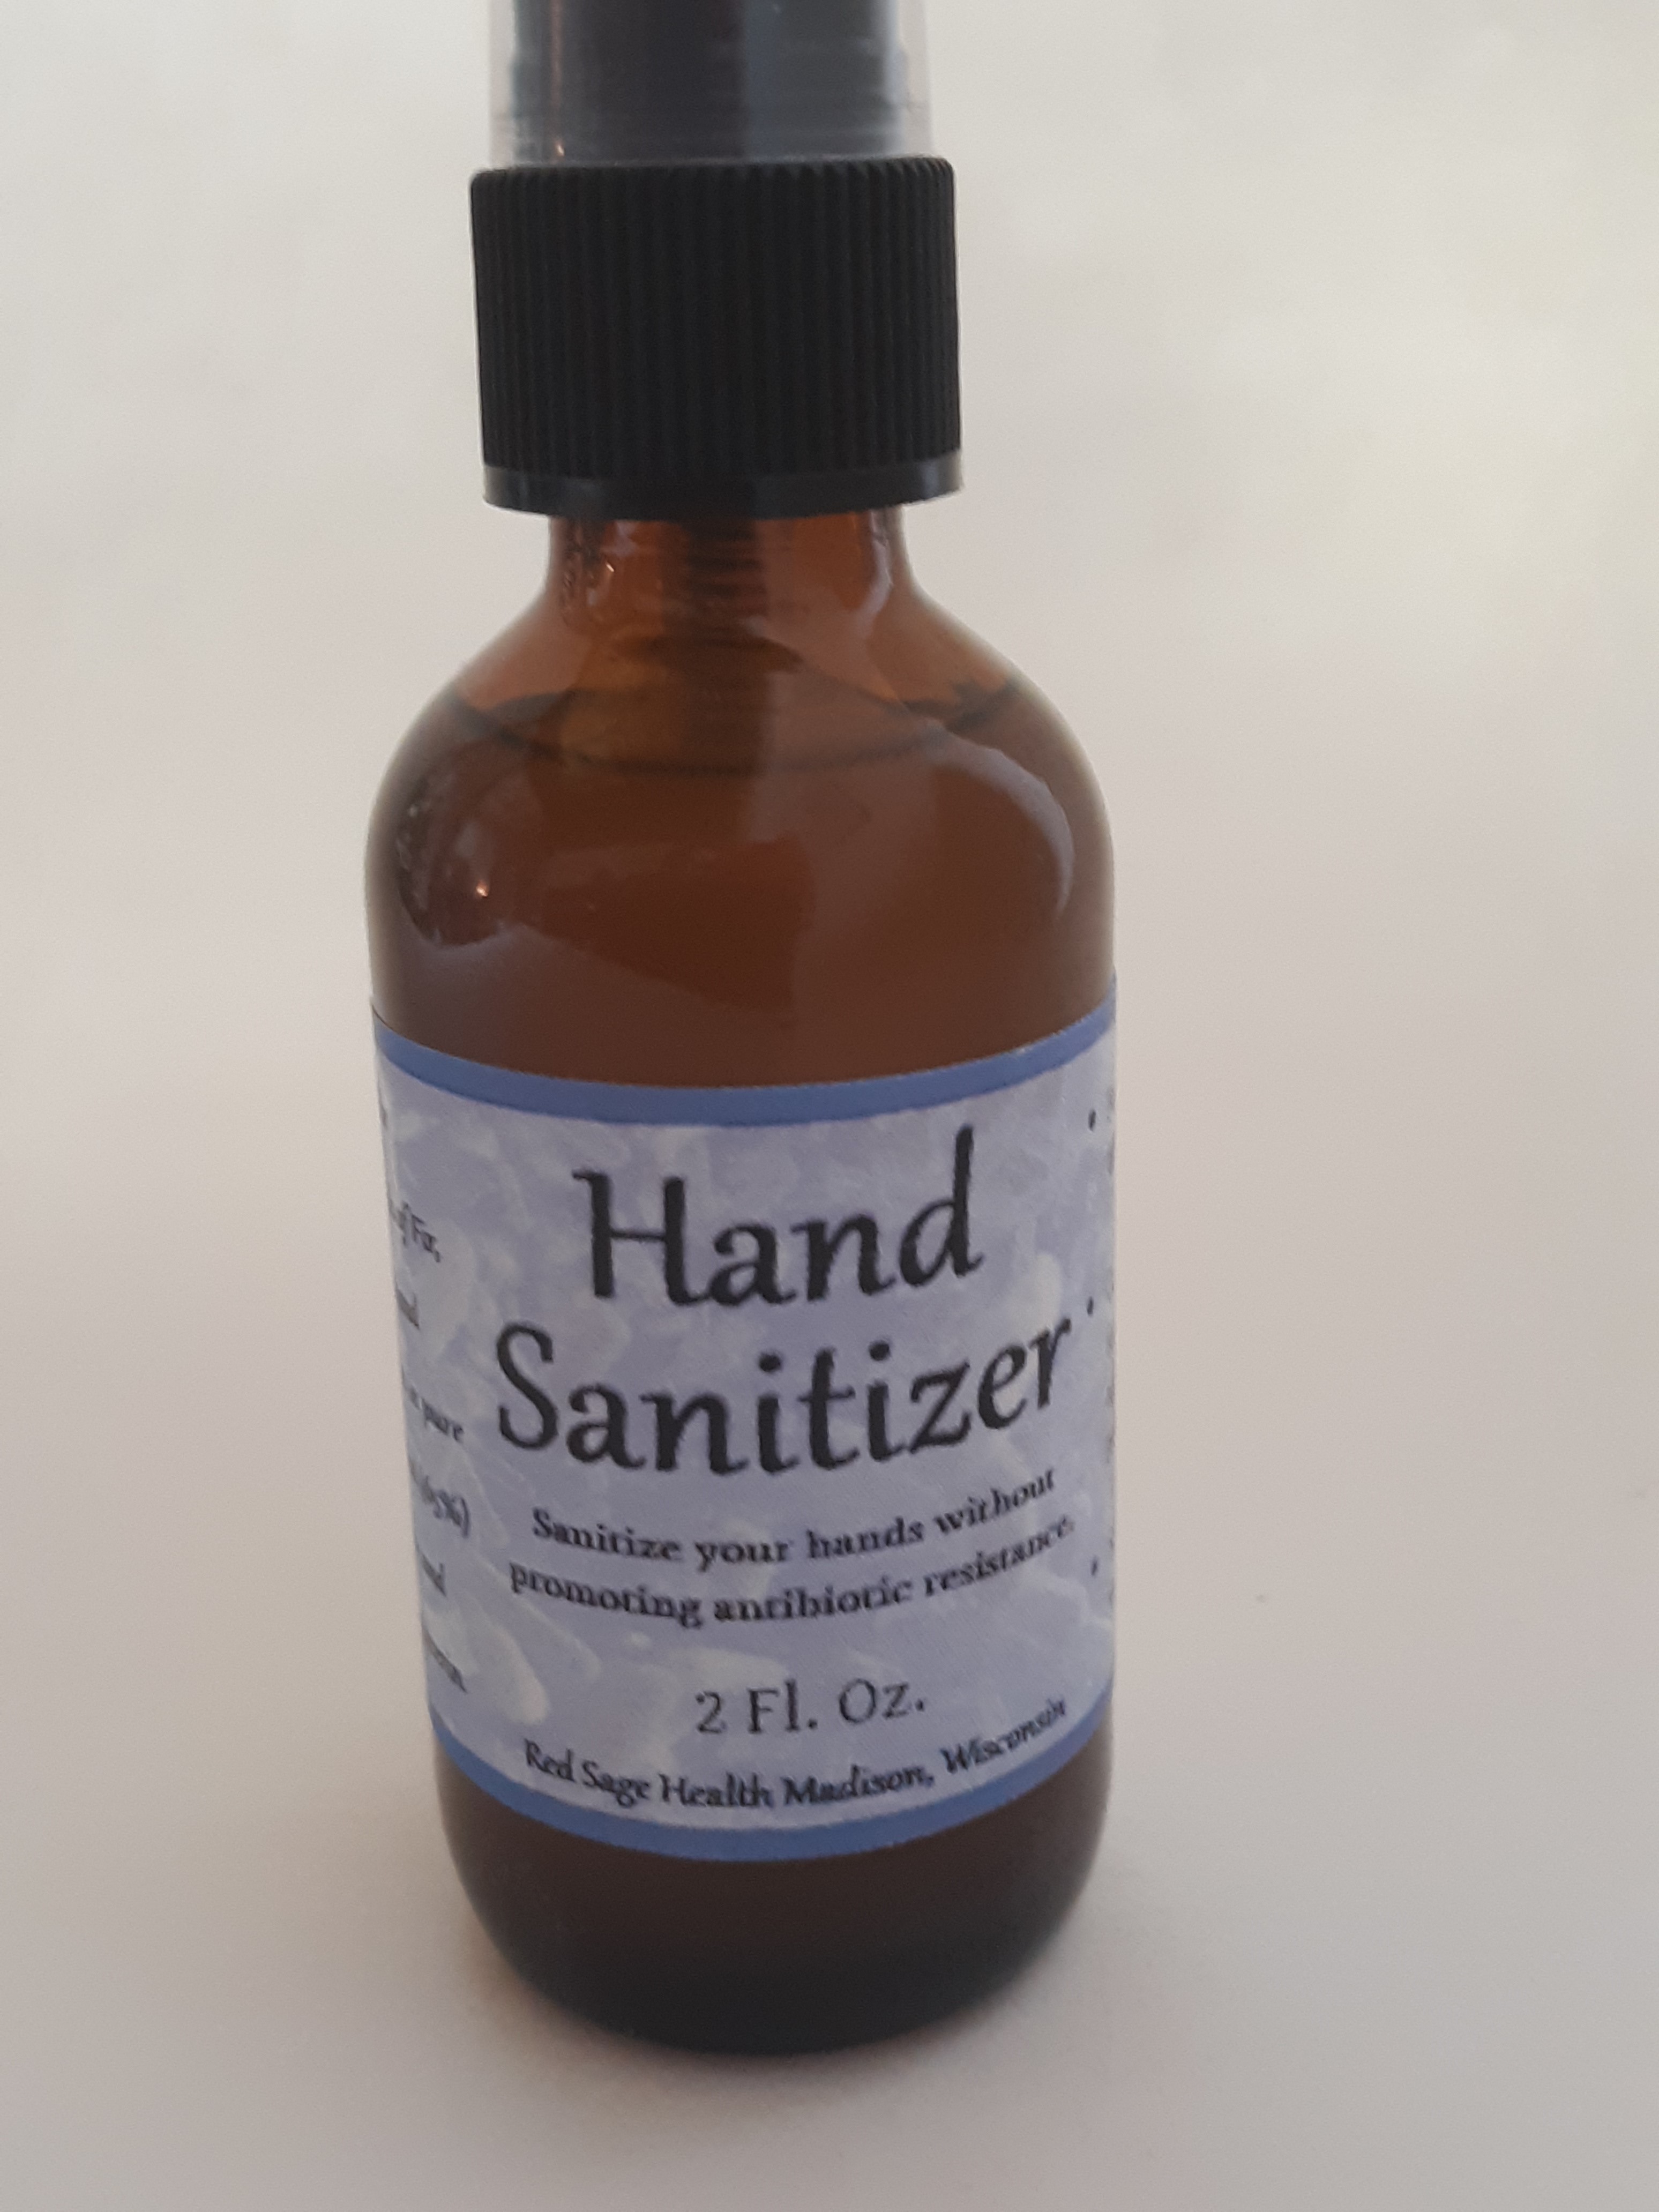 Hand Sanitizer (2 fl. oz.)